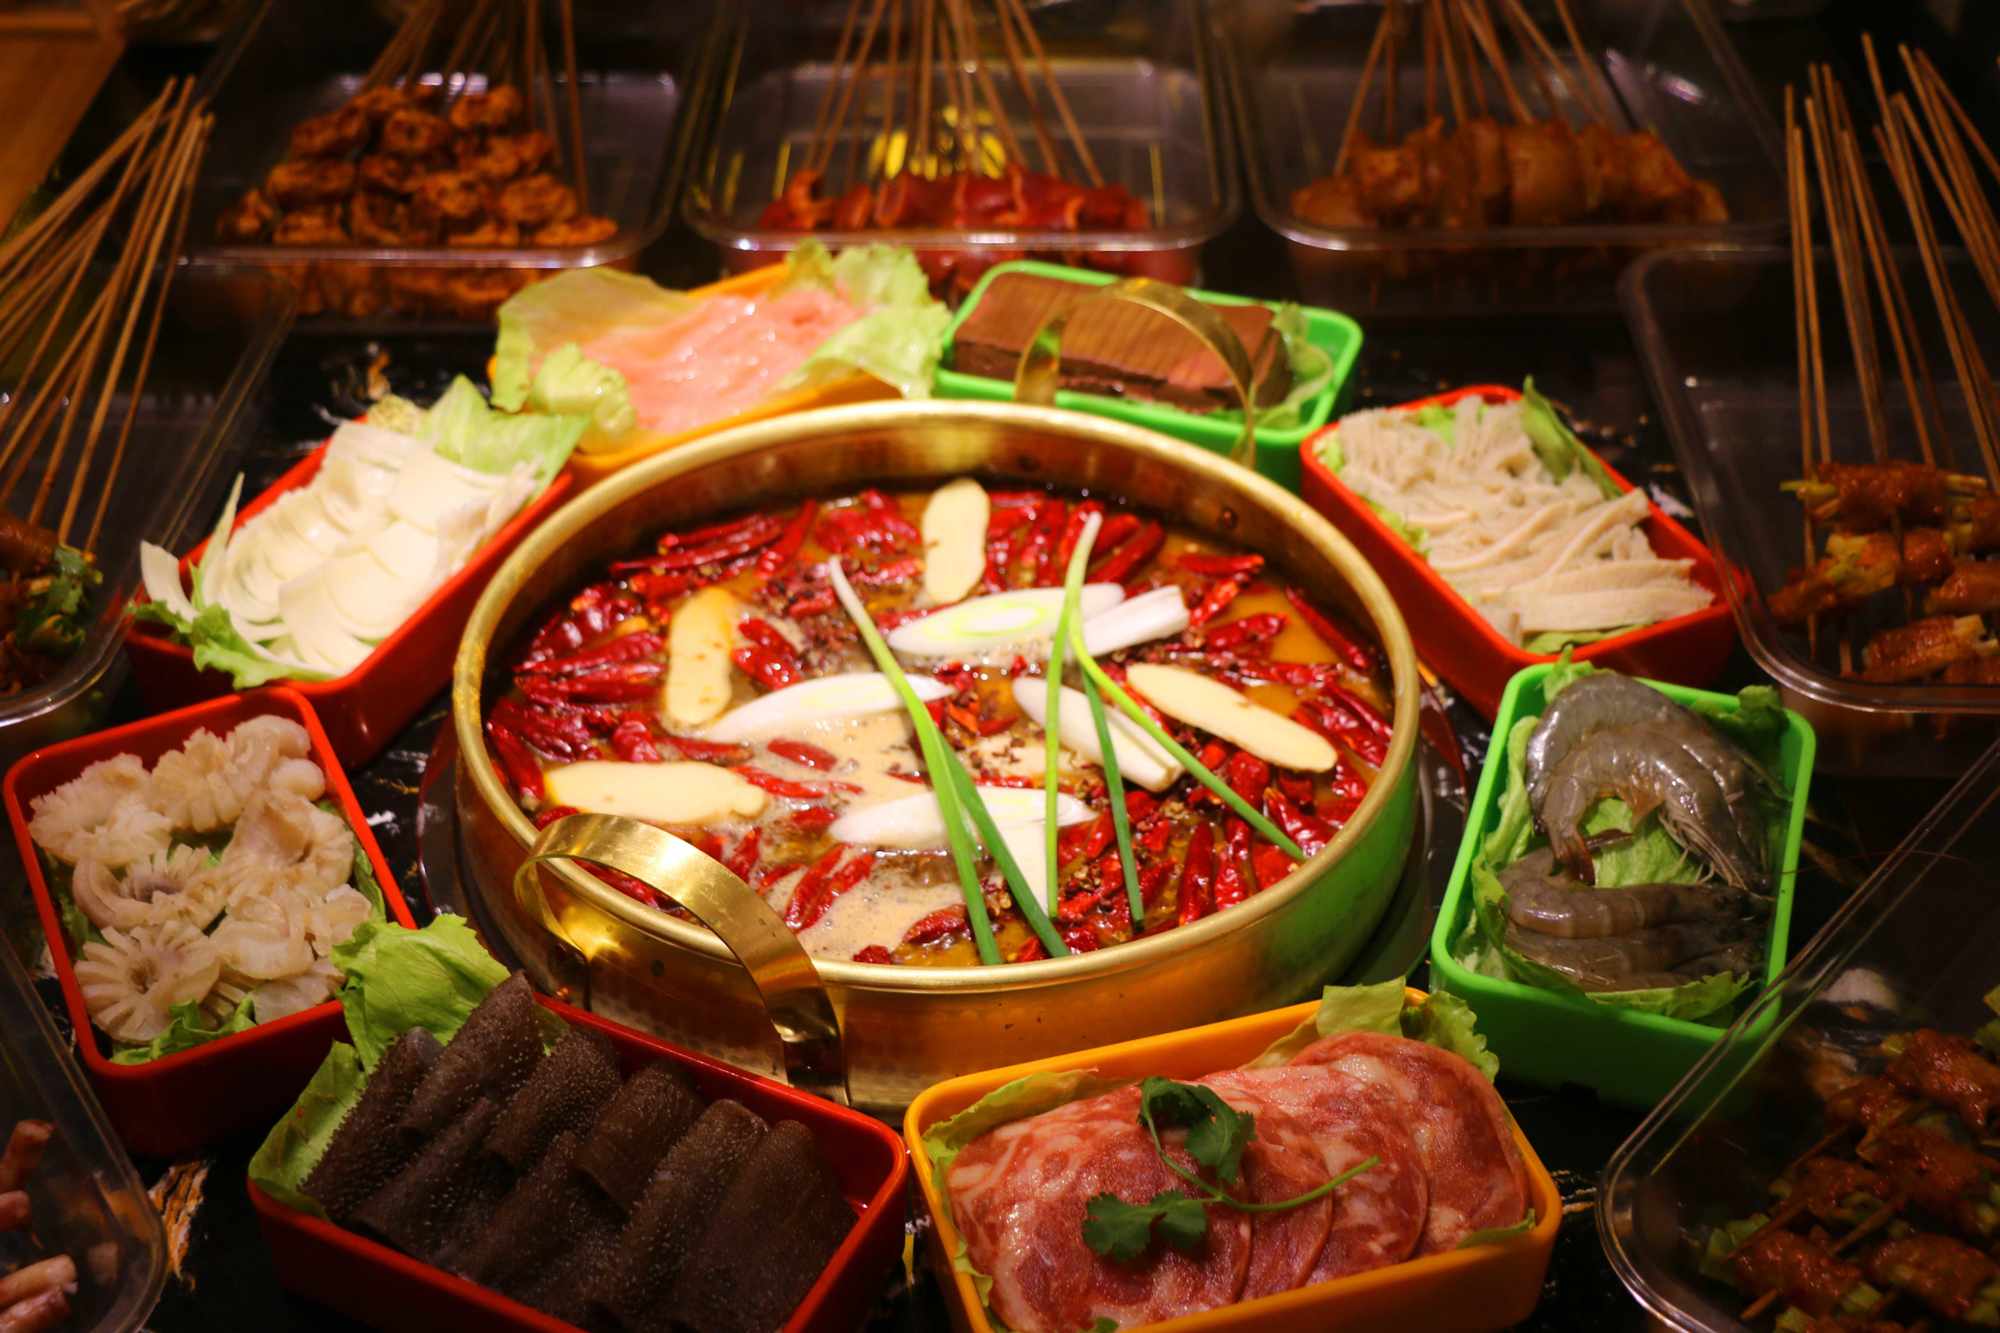 串串火锅是四川地区特色小吃之一,是一种以竹签串上各种菜,将其放进